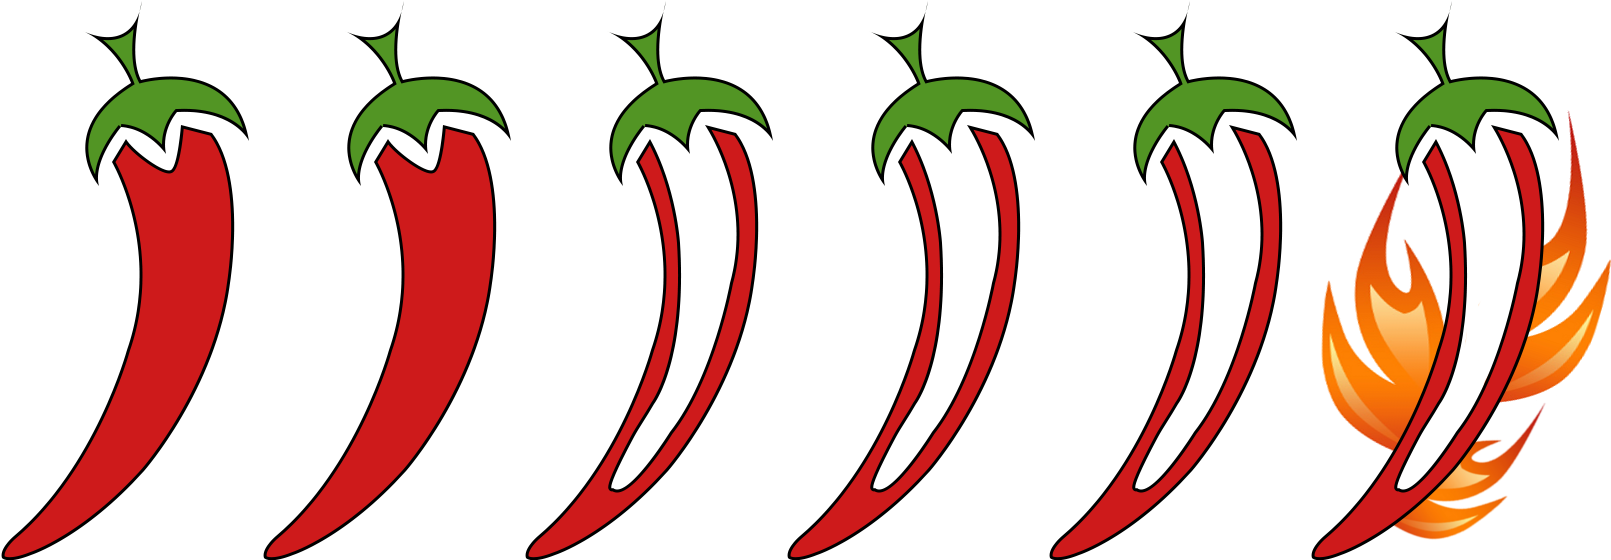 Okra & Garlic Pickle - Chili Pepper (1645x612)